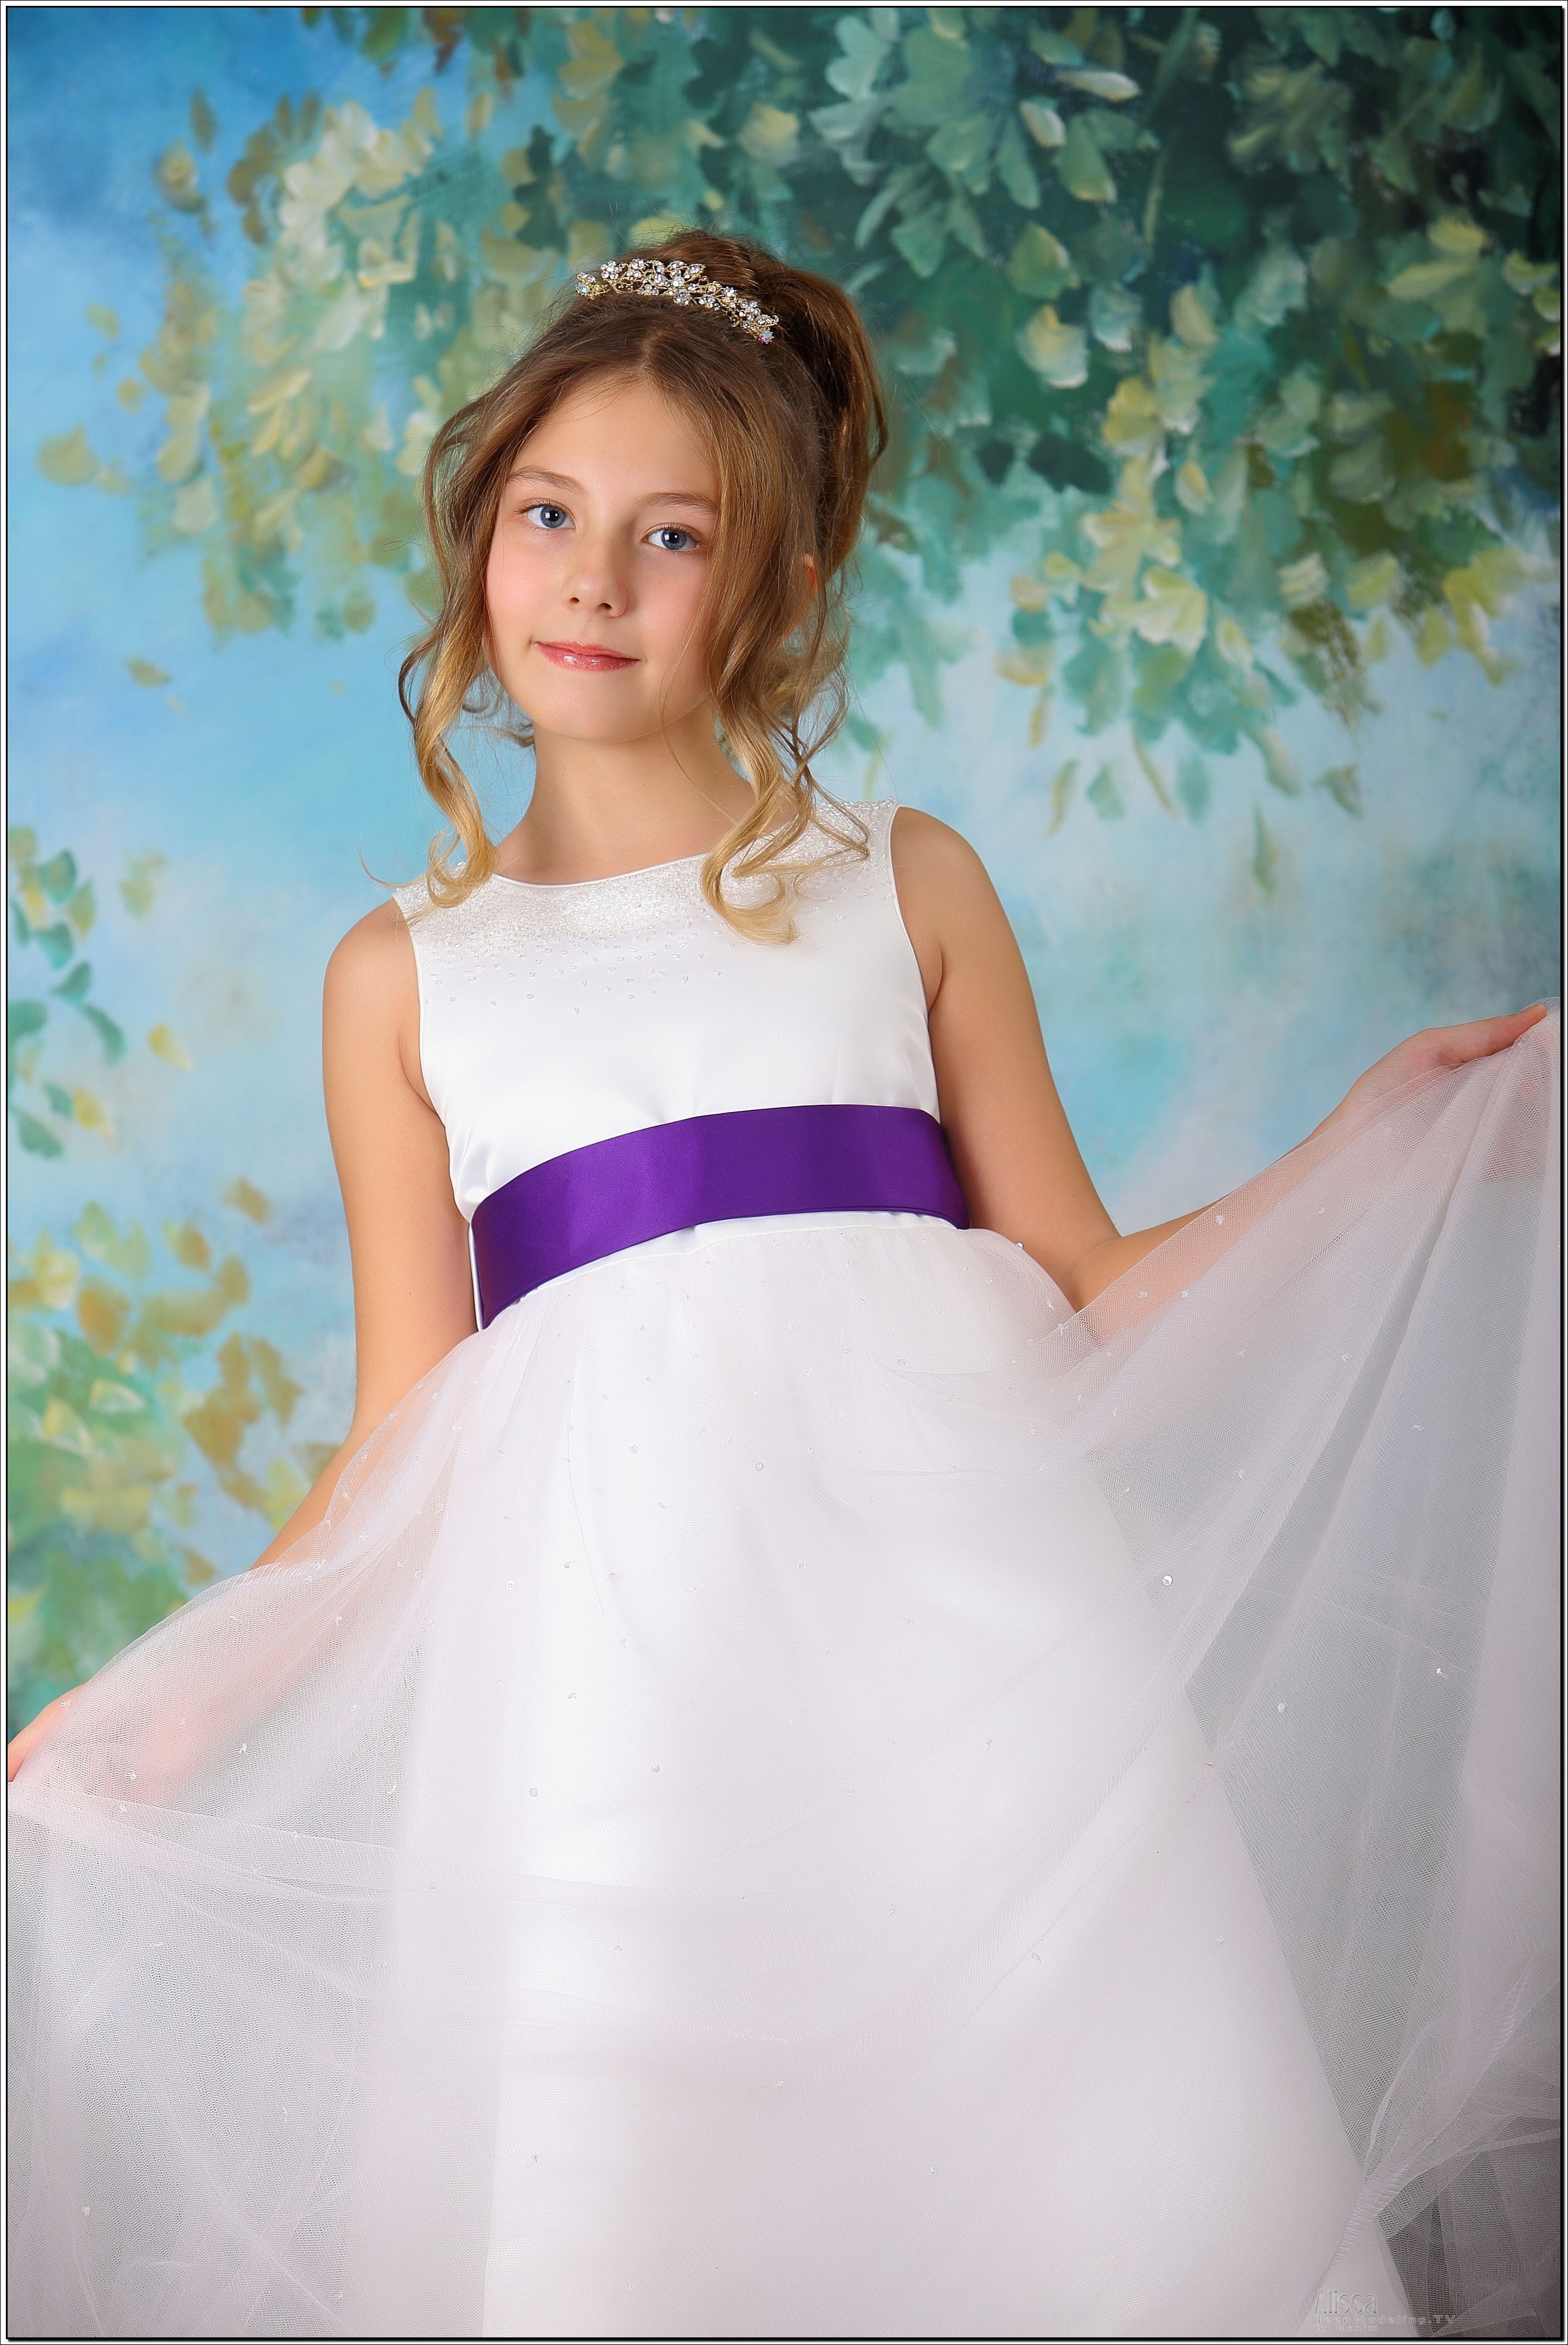 alissa_model_white_purpledress_teenmodeling_tv_007.jpg